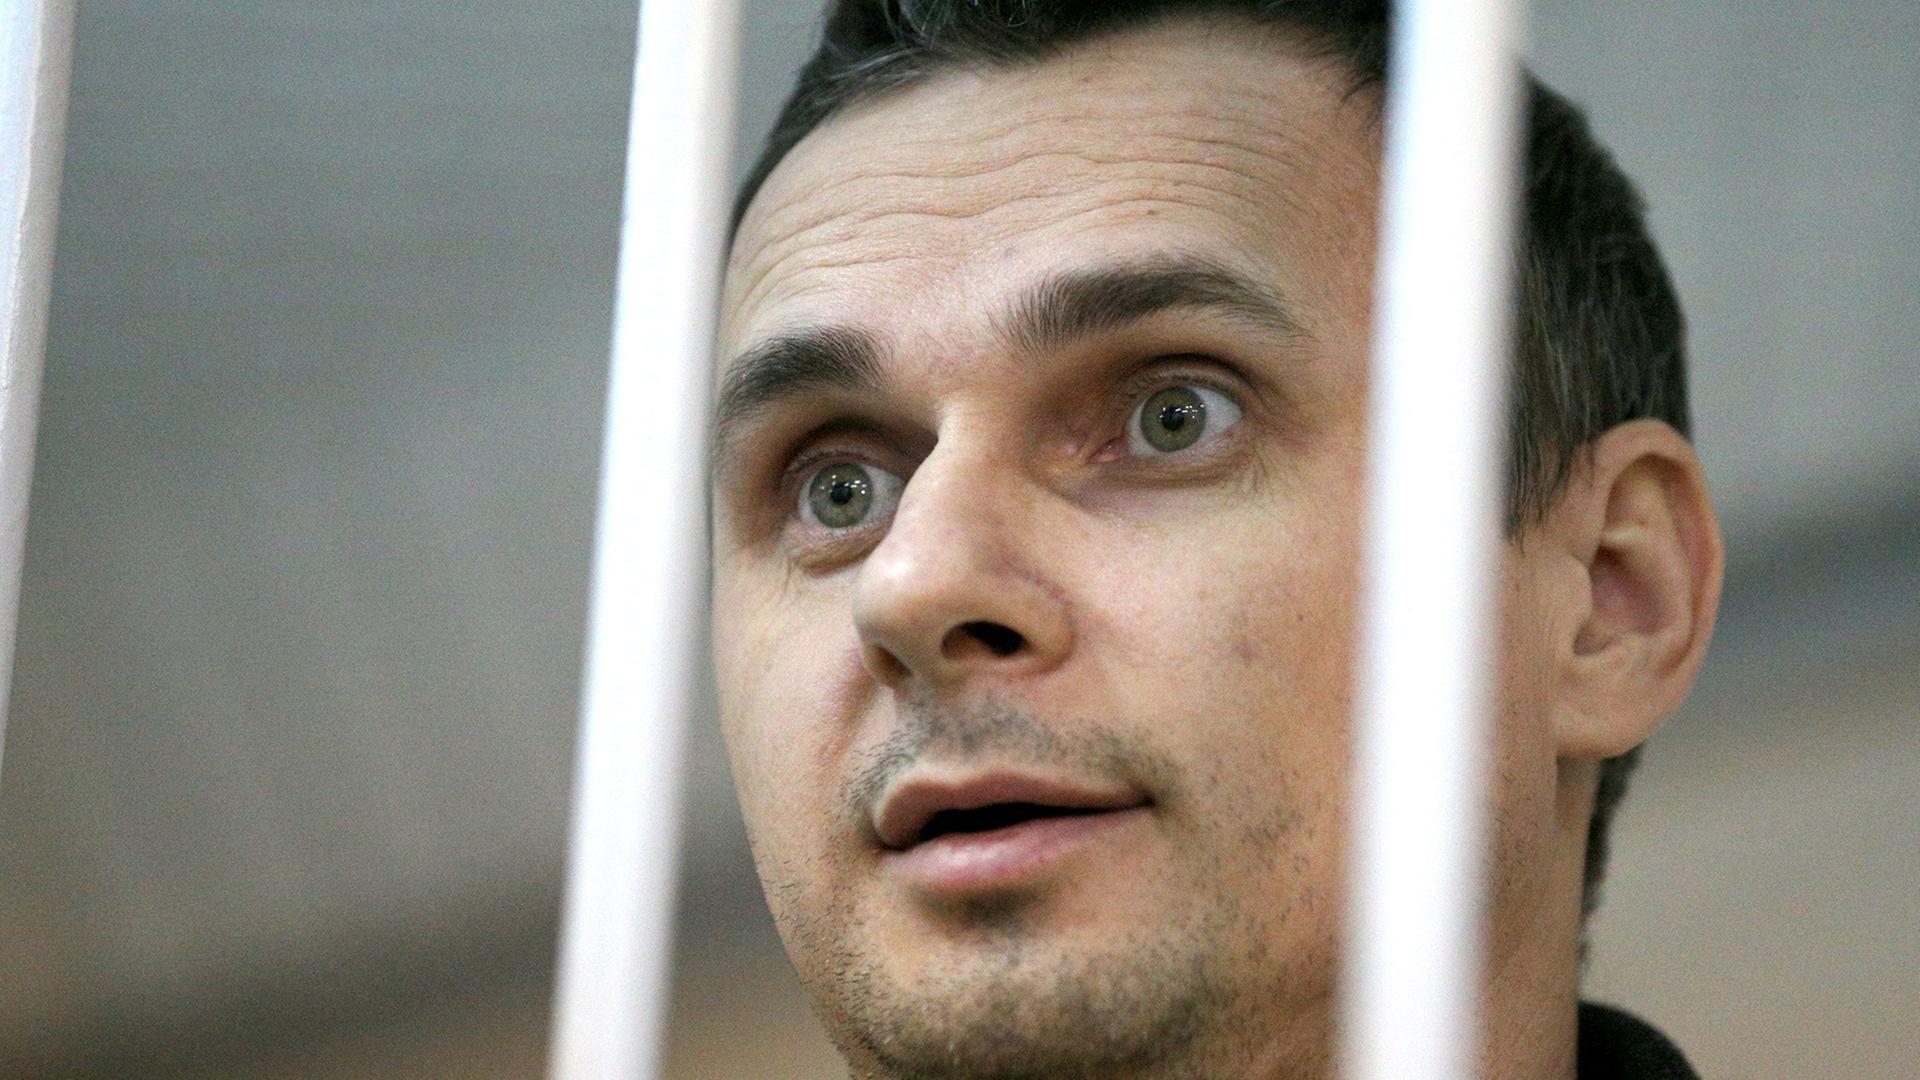 Der ukrainische Kinoregisseur Oleg Senzow wurde von einem russischen Gericht zu 20 Jahren Haft verurteilt; die Aufnahme zeigt ihn bei einer gerichtlichen Anhörung im Dezember 2014 in Moskau in einem Käfig.